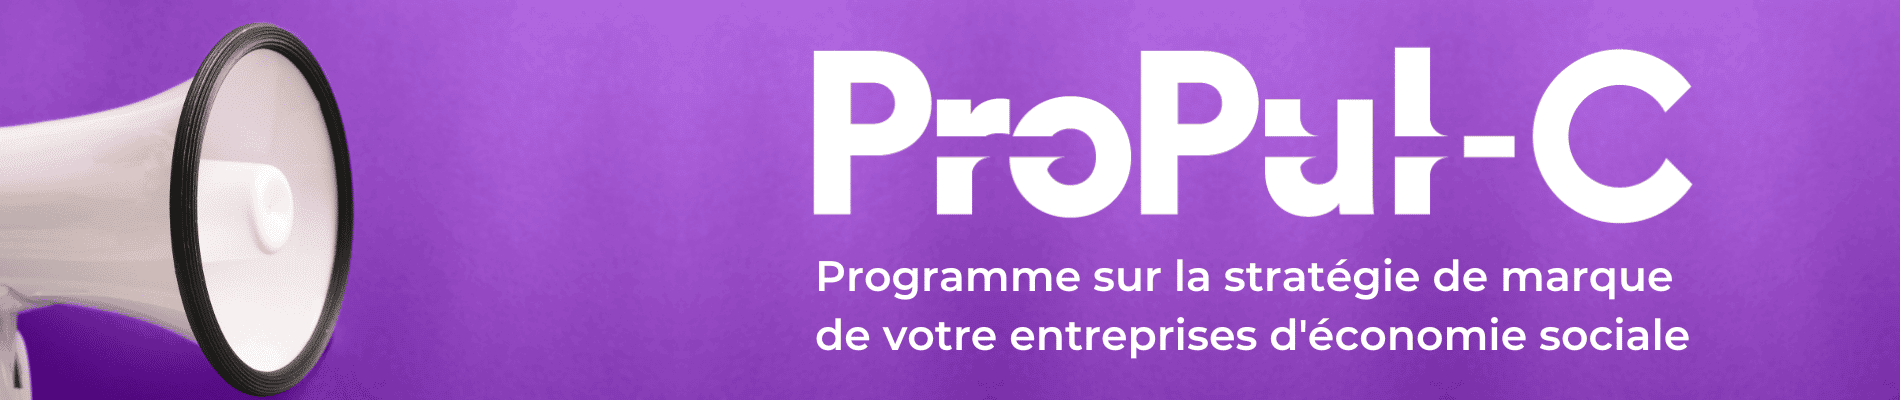 ProPul-C_violet